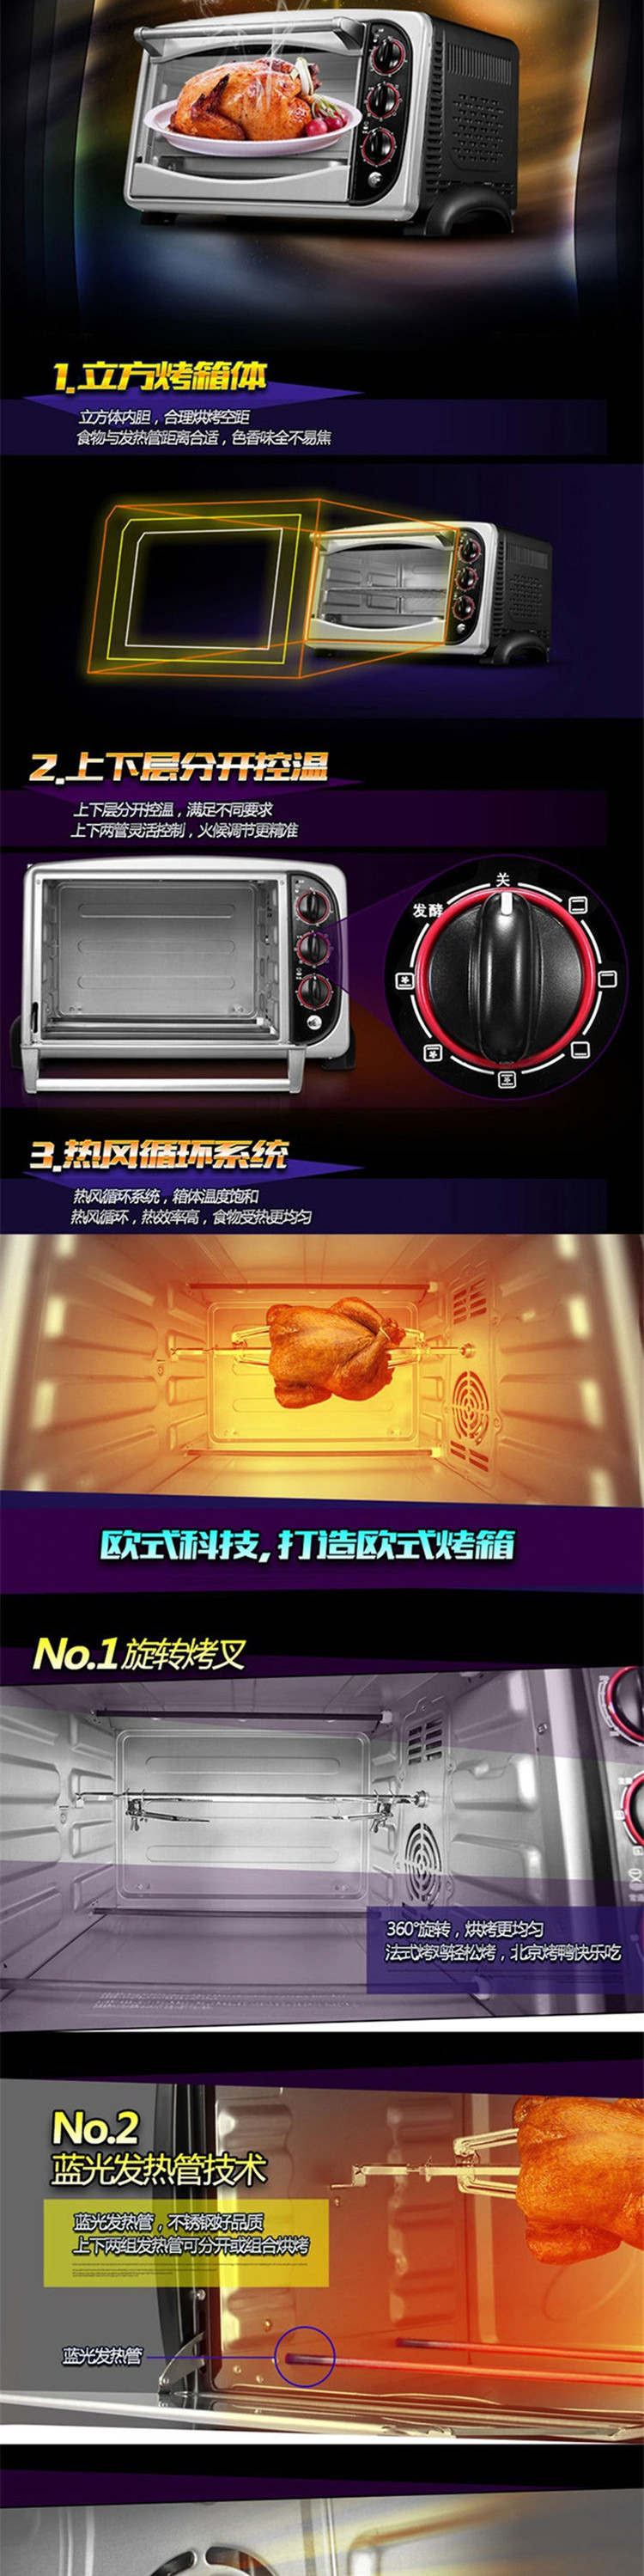 东菱 Donlim 25L家用多功能电烤箱 DL-K25C 上下管控温可调节